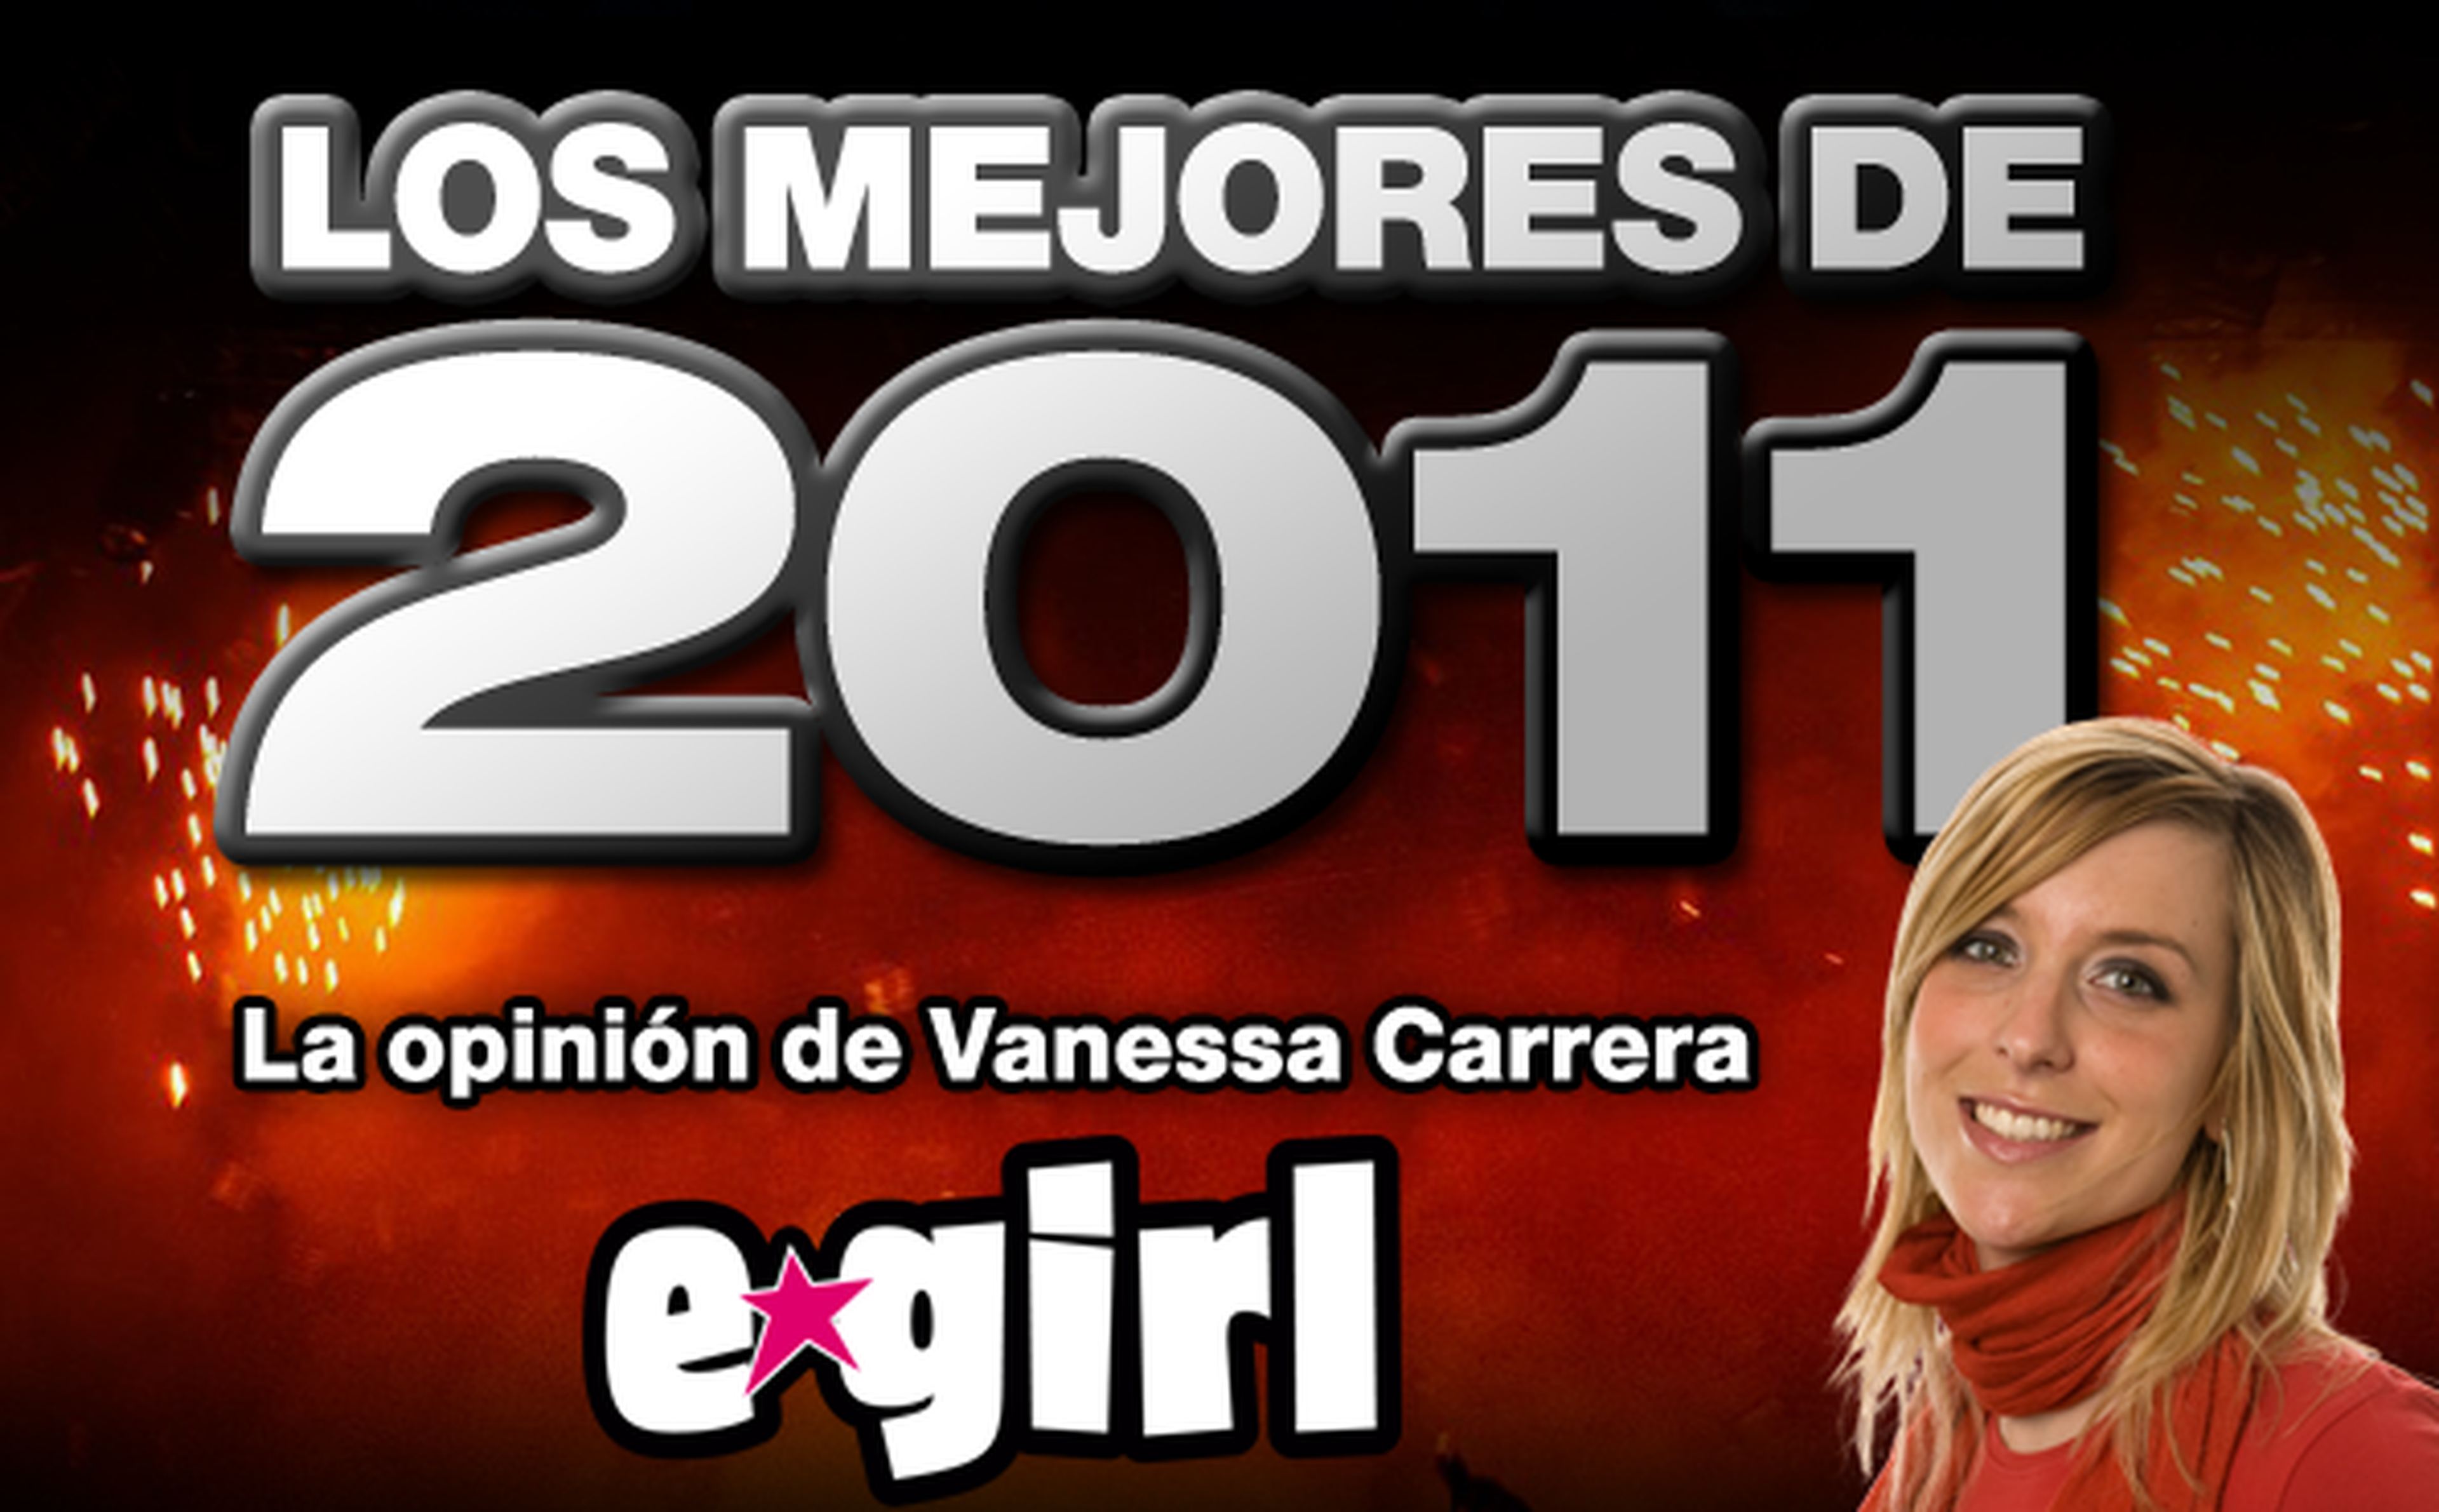 Los mejores de 2011: Vanessa Carrera